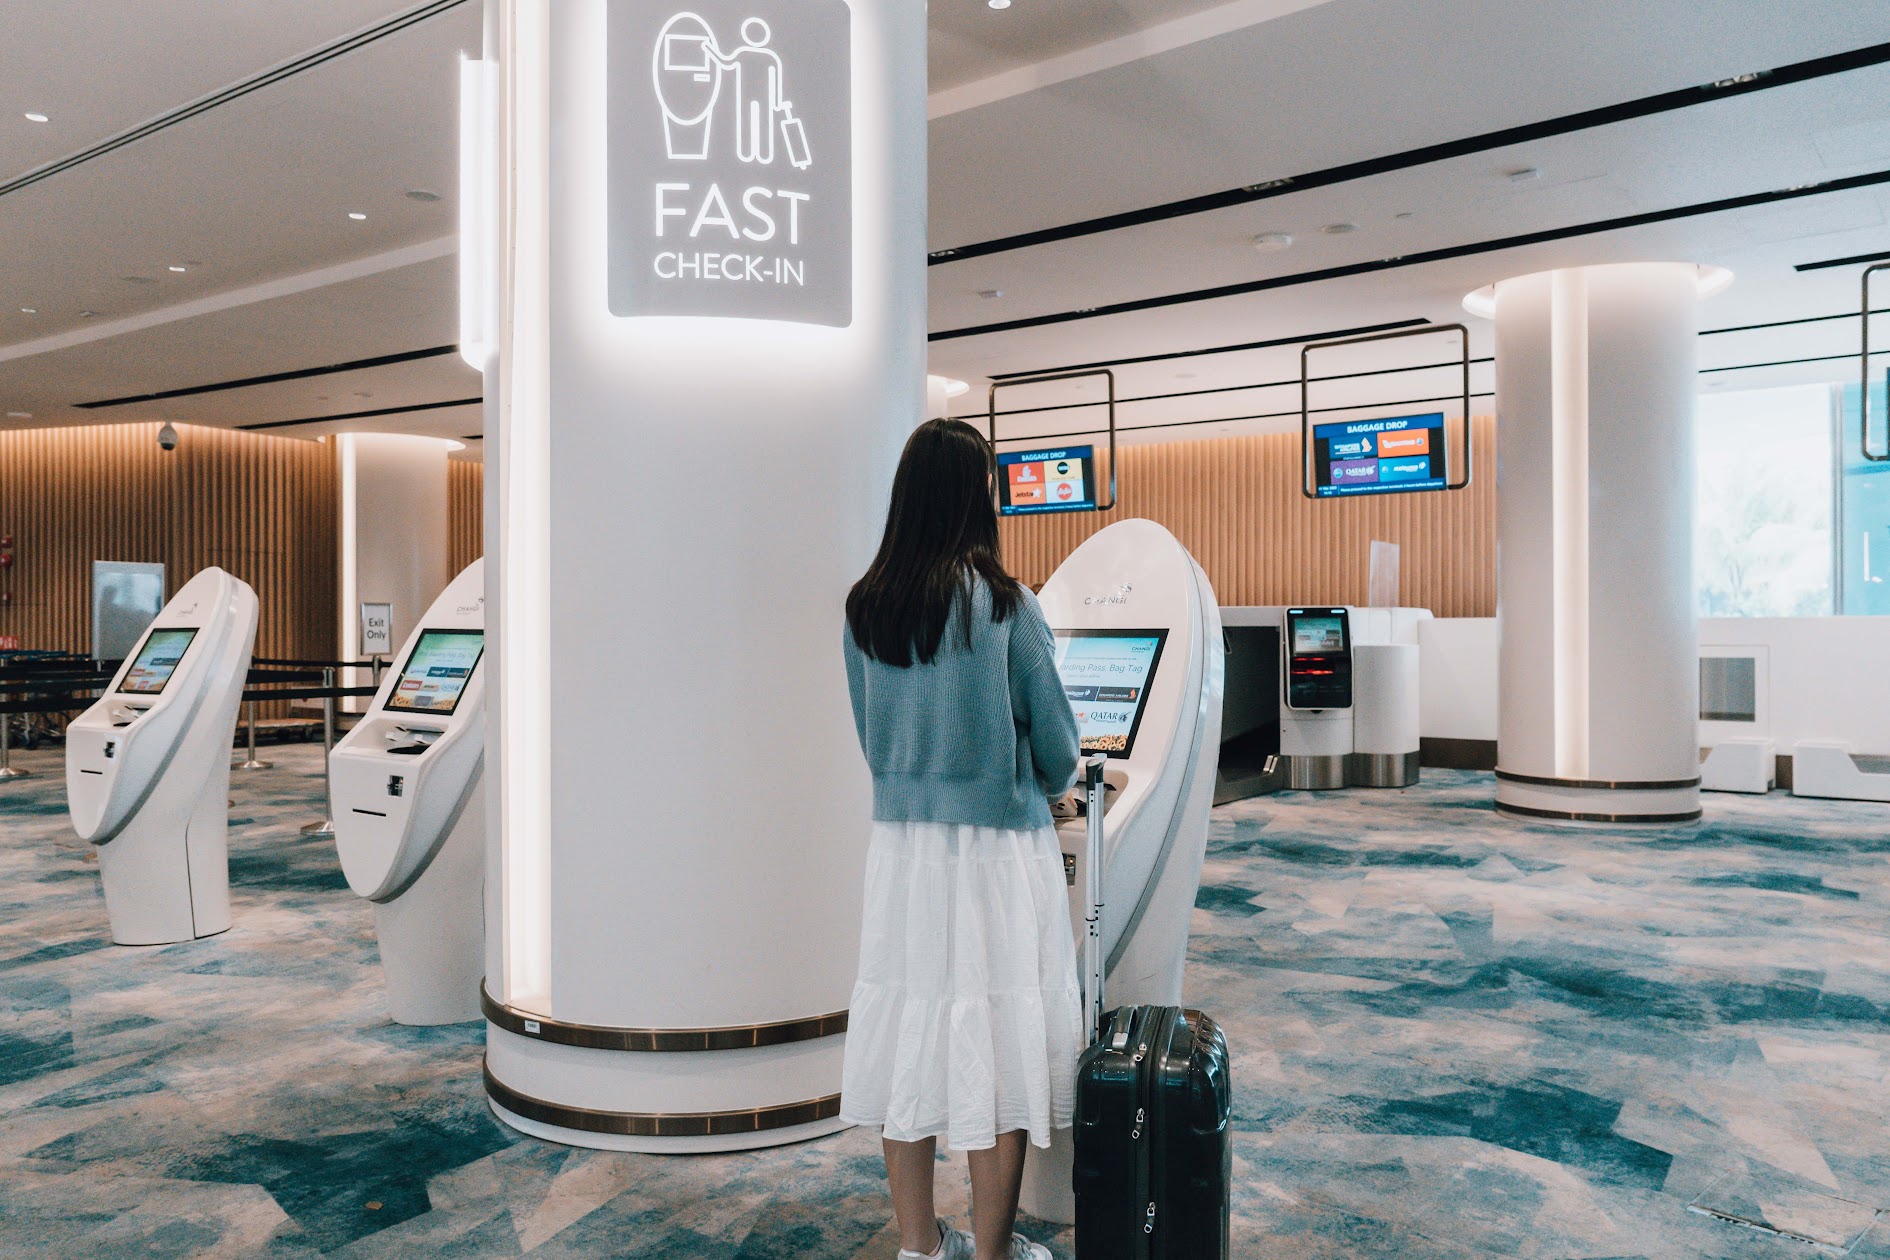 Sân bay Changi tái mở cửa nhà ga T2, nội khu hiện đại, đầy hơi thở thiên nhiên khiến tín đồ du lịch nhấp nhổm!  - Ảnh 1.